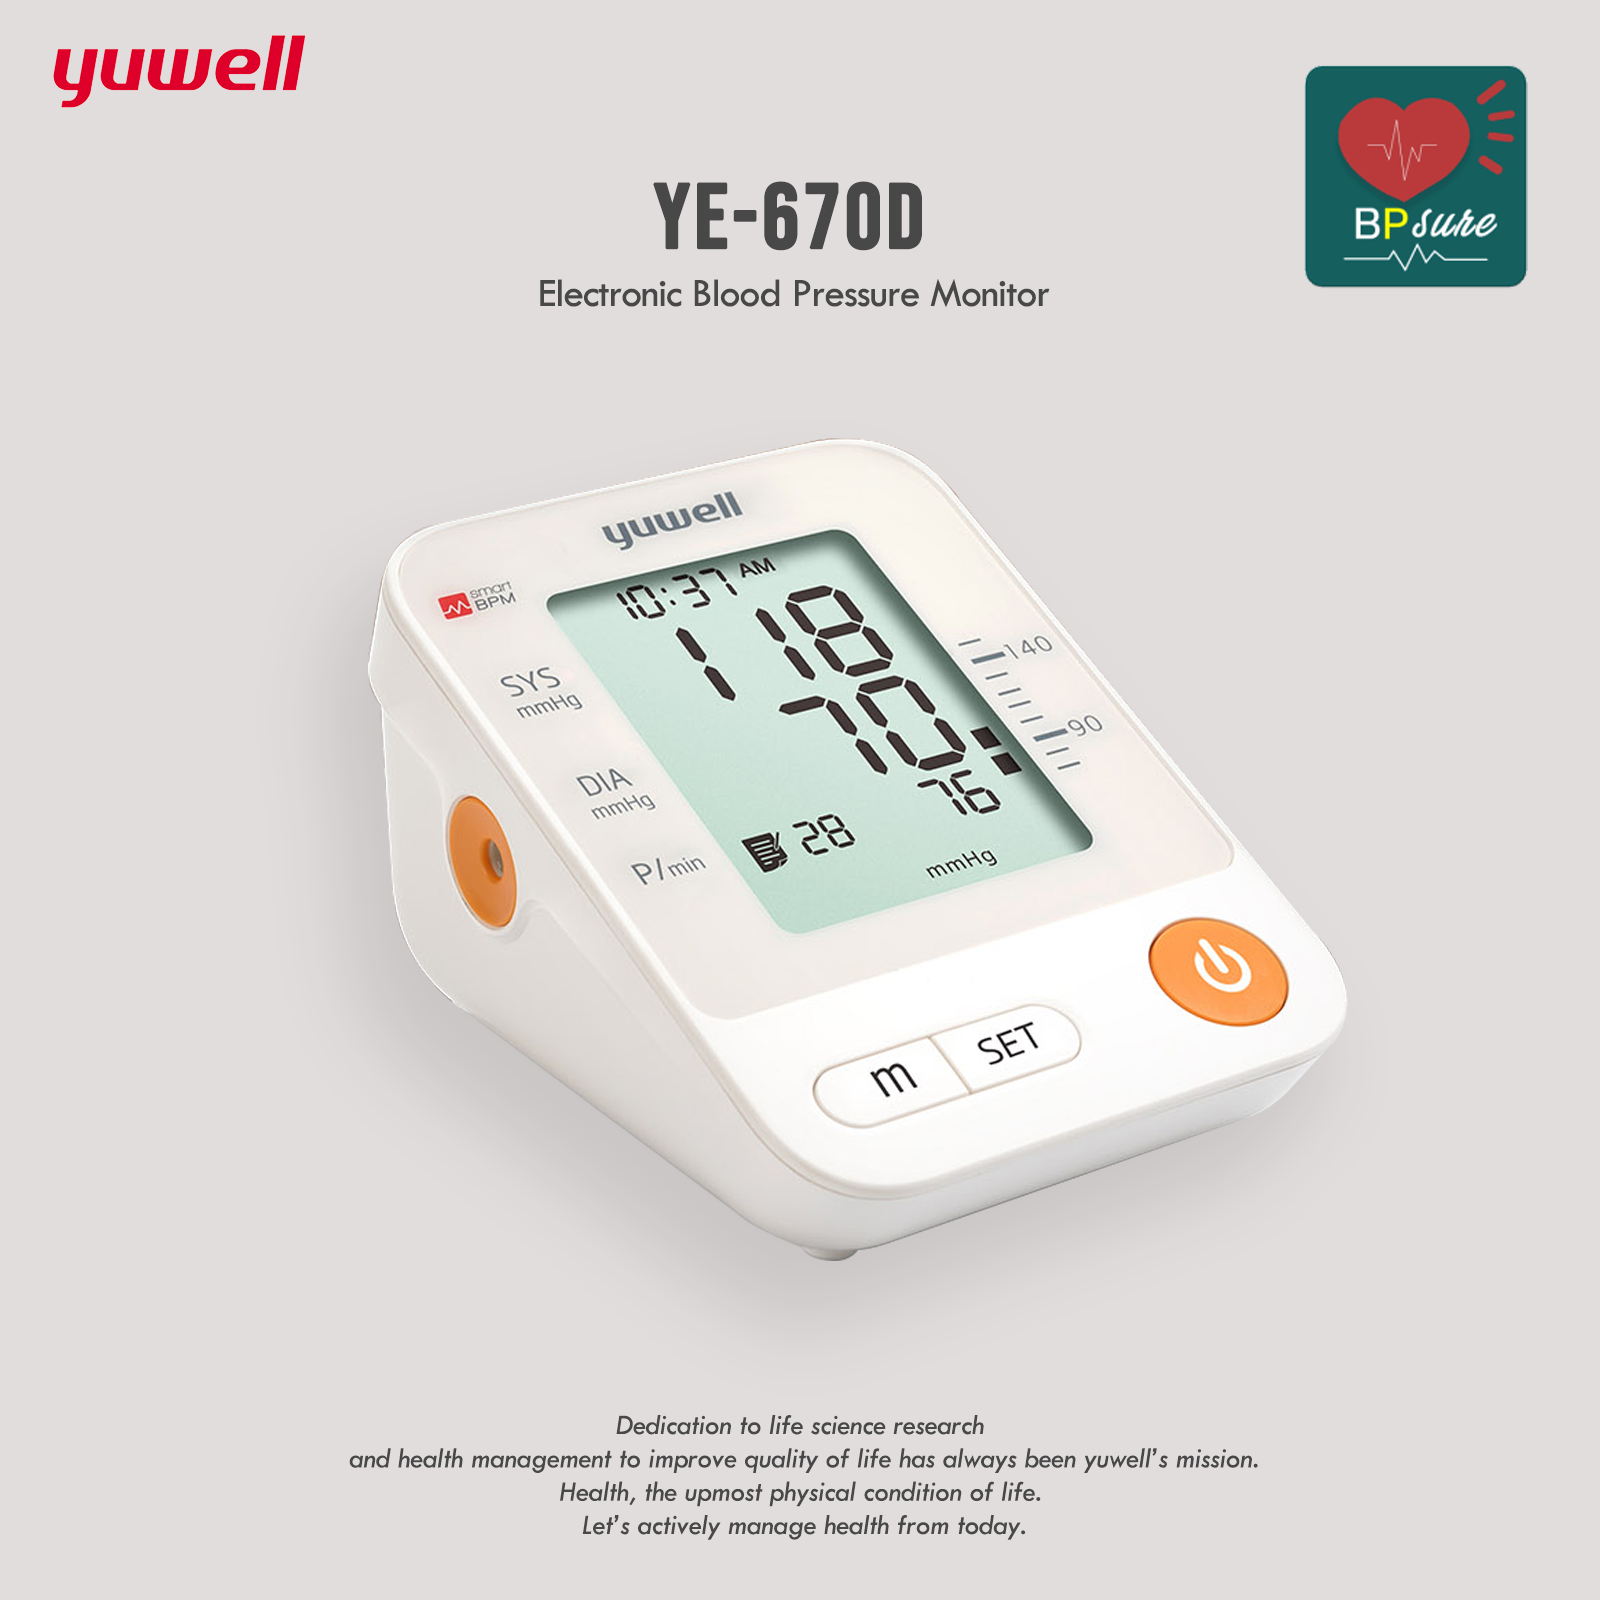 (รับประกัน 1 ปี) Yuwell YE670D เครื่องวัดความดันโลหิต (เชื่อมต่อแอพลิเคชั่น BP Sure ได้) มีเสียงพูด เครื่องวัดความดันโลหิตดิจิตอล Blood Pressure Monitors